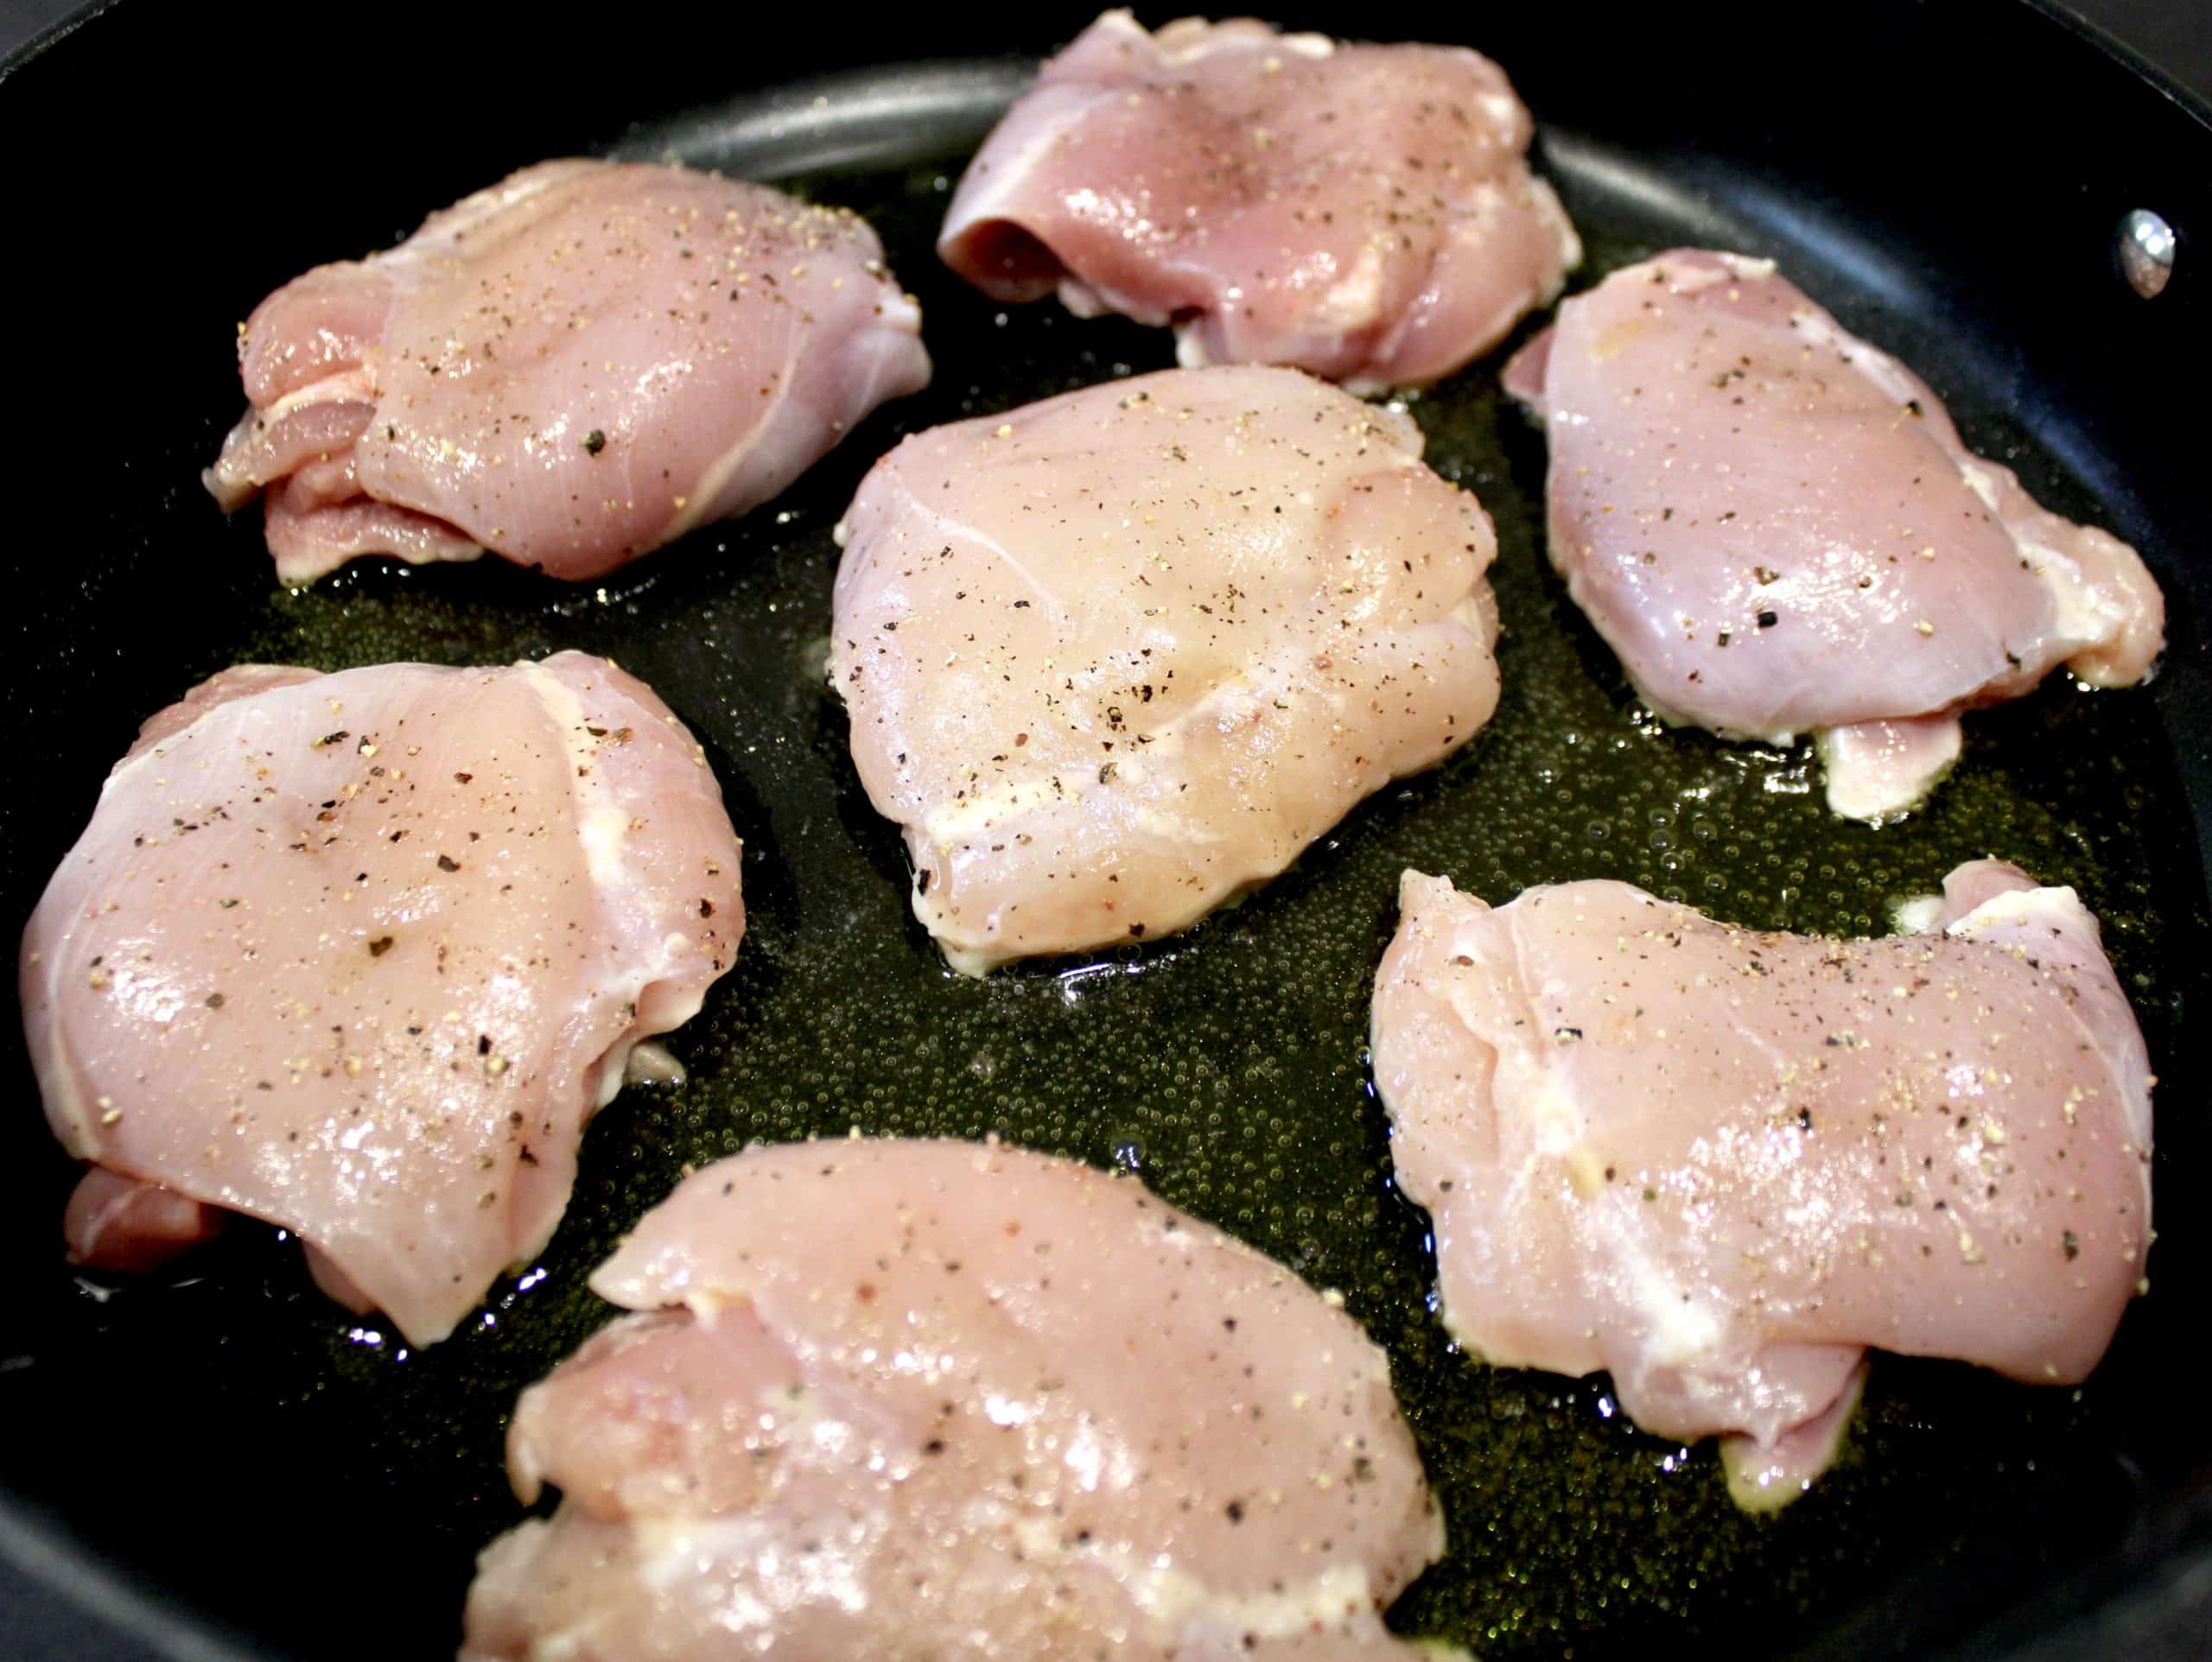 7 raw chicken thighs in skillet